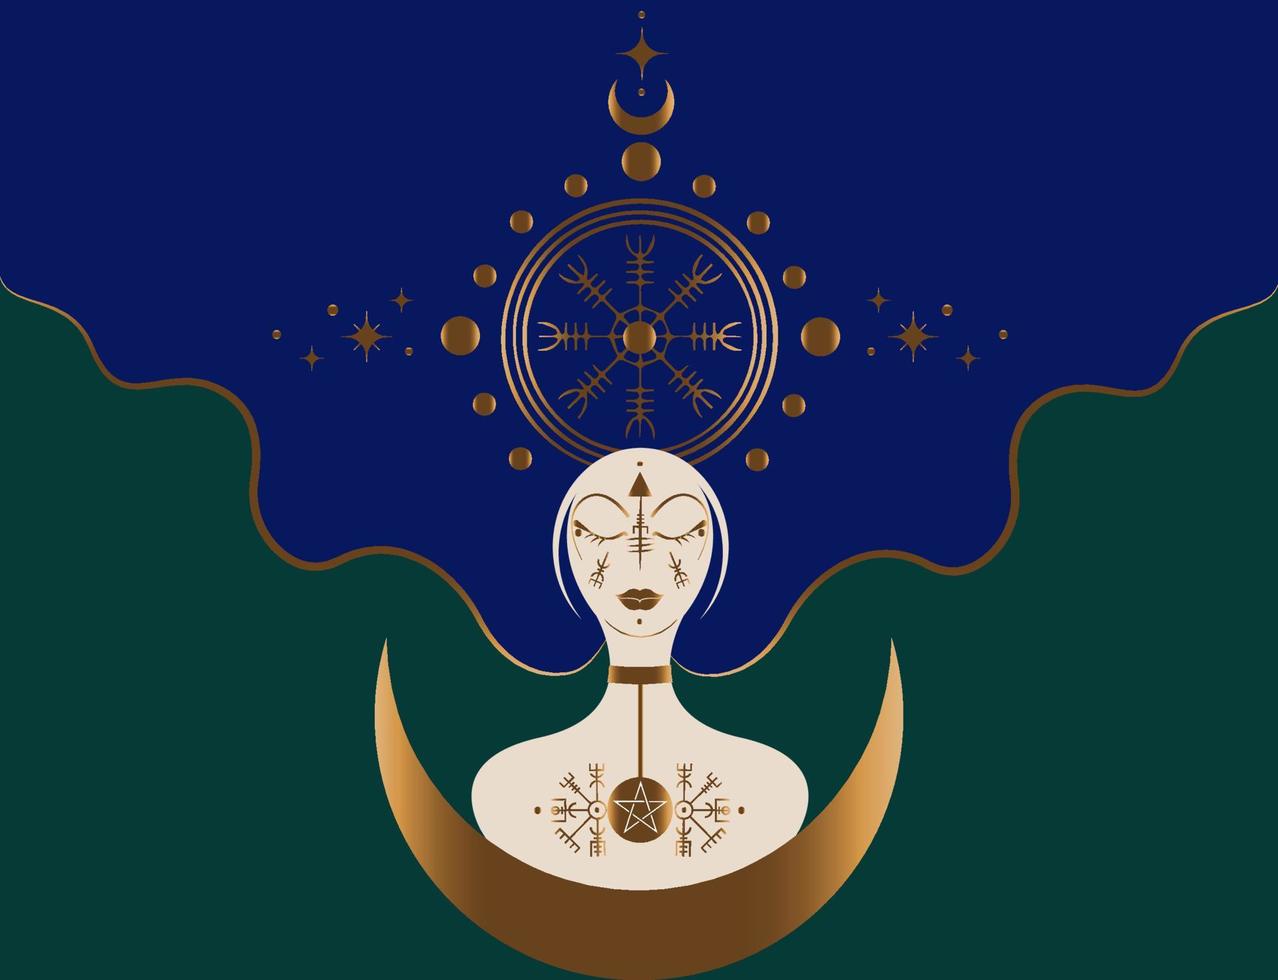 diosa freya, mitología nórdica escandinava asociada con el amor, la belleza, la fertilidad, el sexo, la guerra, el oro. freyja gobierna sobre su campo celestial, vector aislado en fondo verde y azul